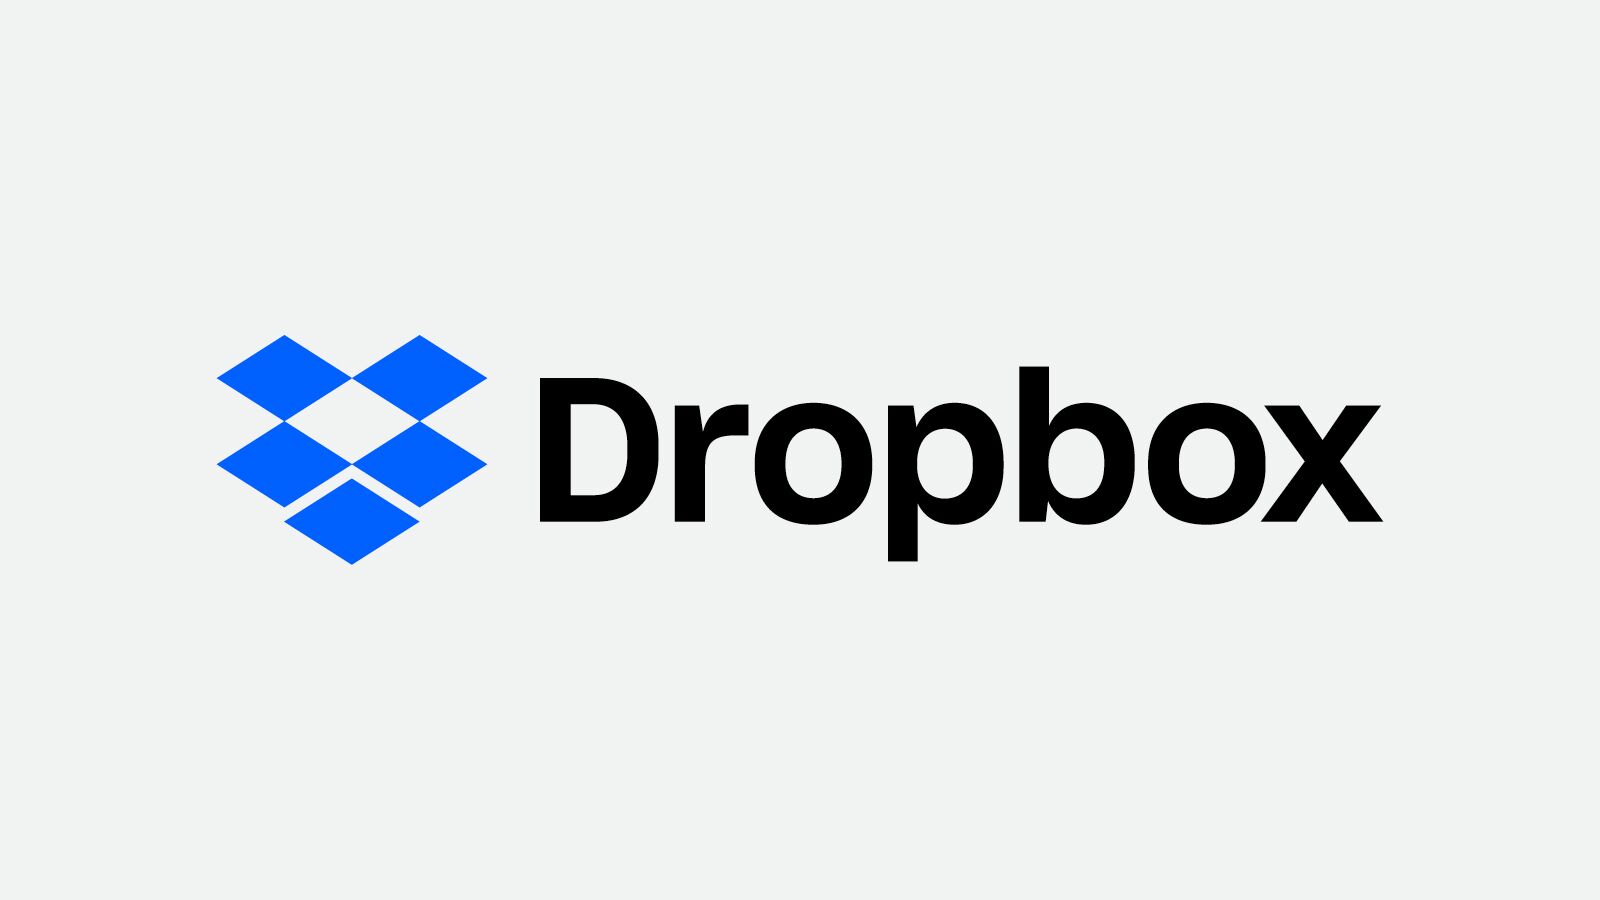 Molnföretaget Dropbox förbereder nyemission av allt att döma. Dropbox har nämligen lämnat in pappersarbetet för en listningsemission till den amerikanska finansinspektionen SEC, eller Securities and Exchange Commission, som är det fullständiga namnet.